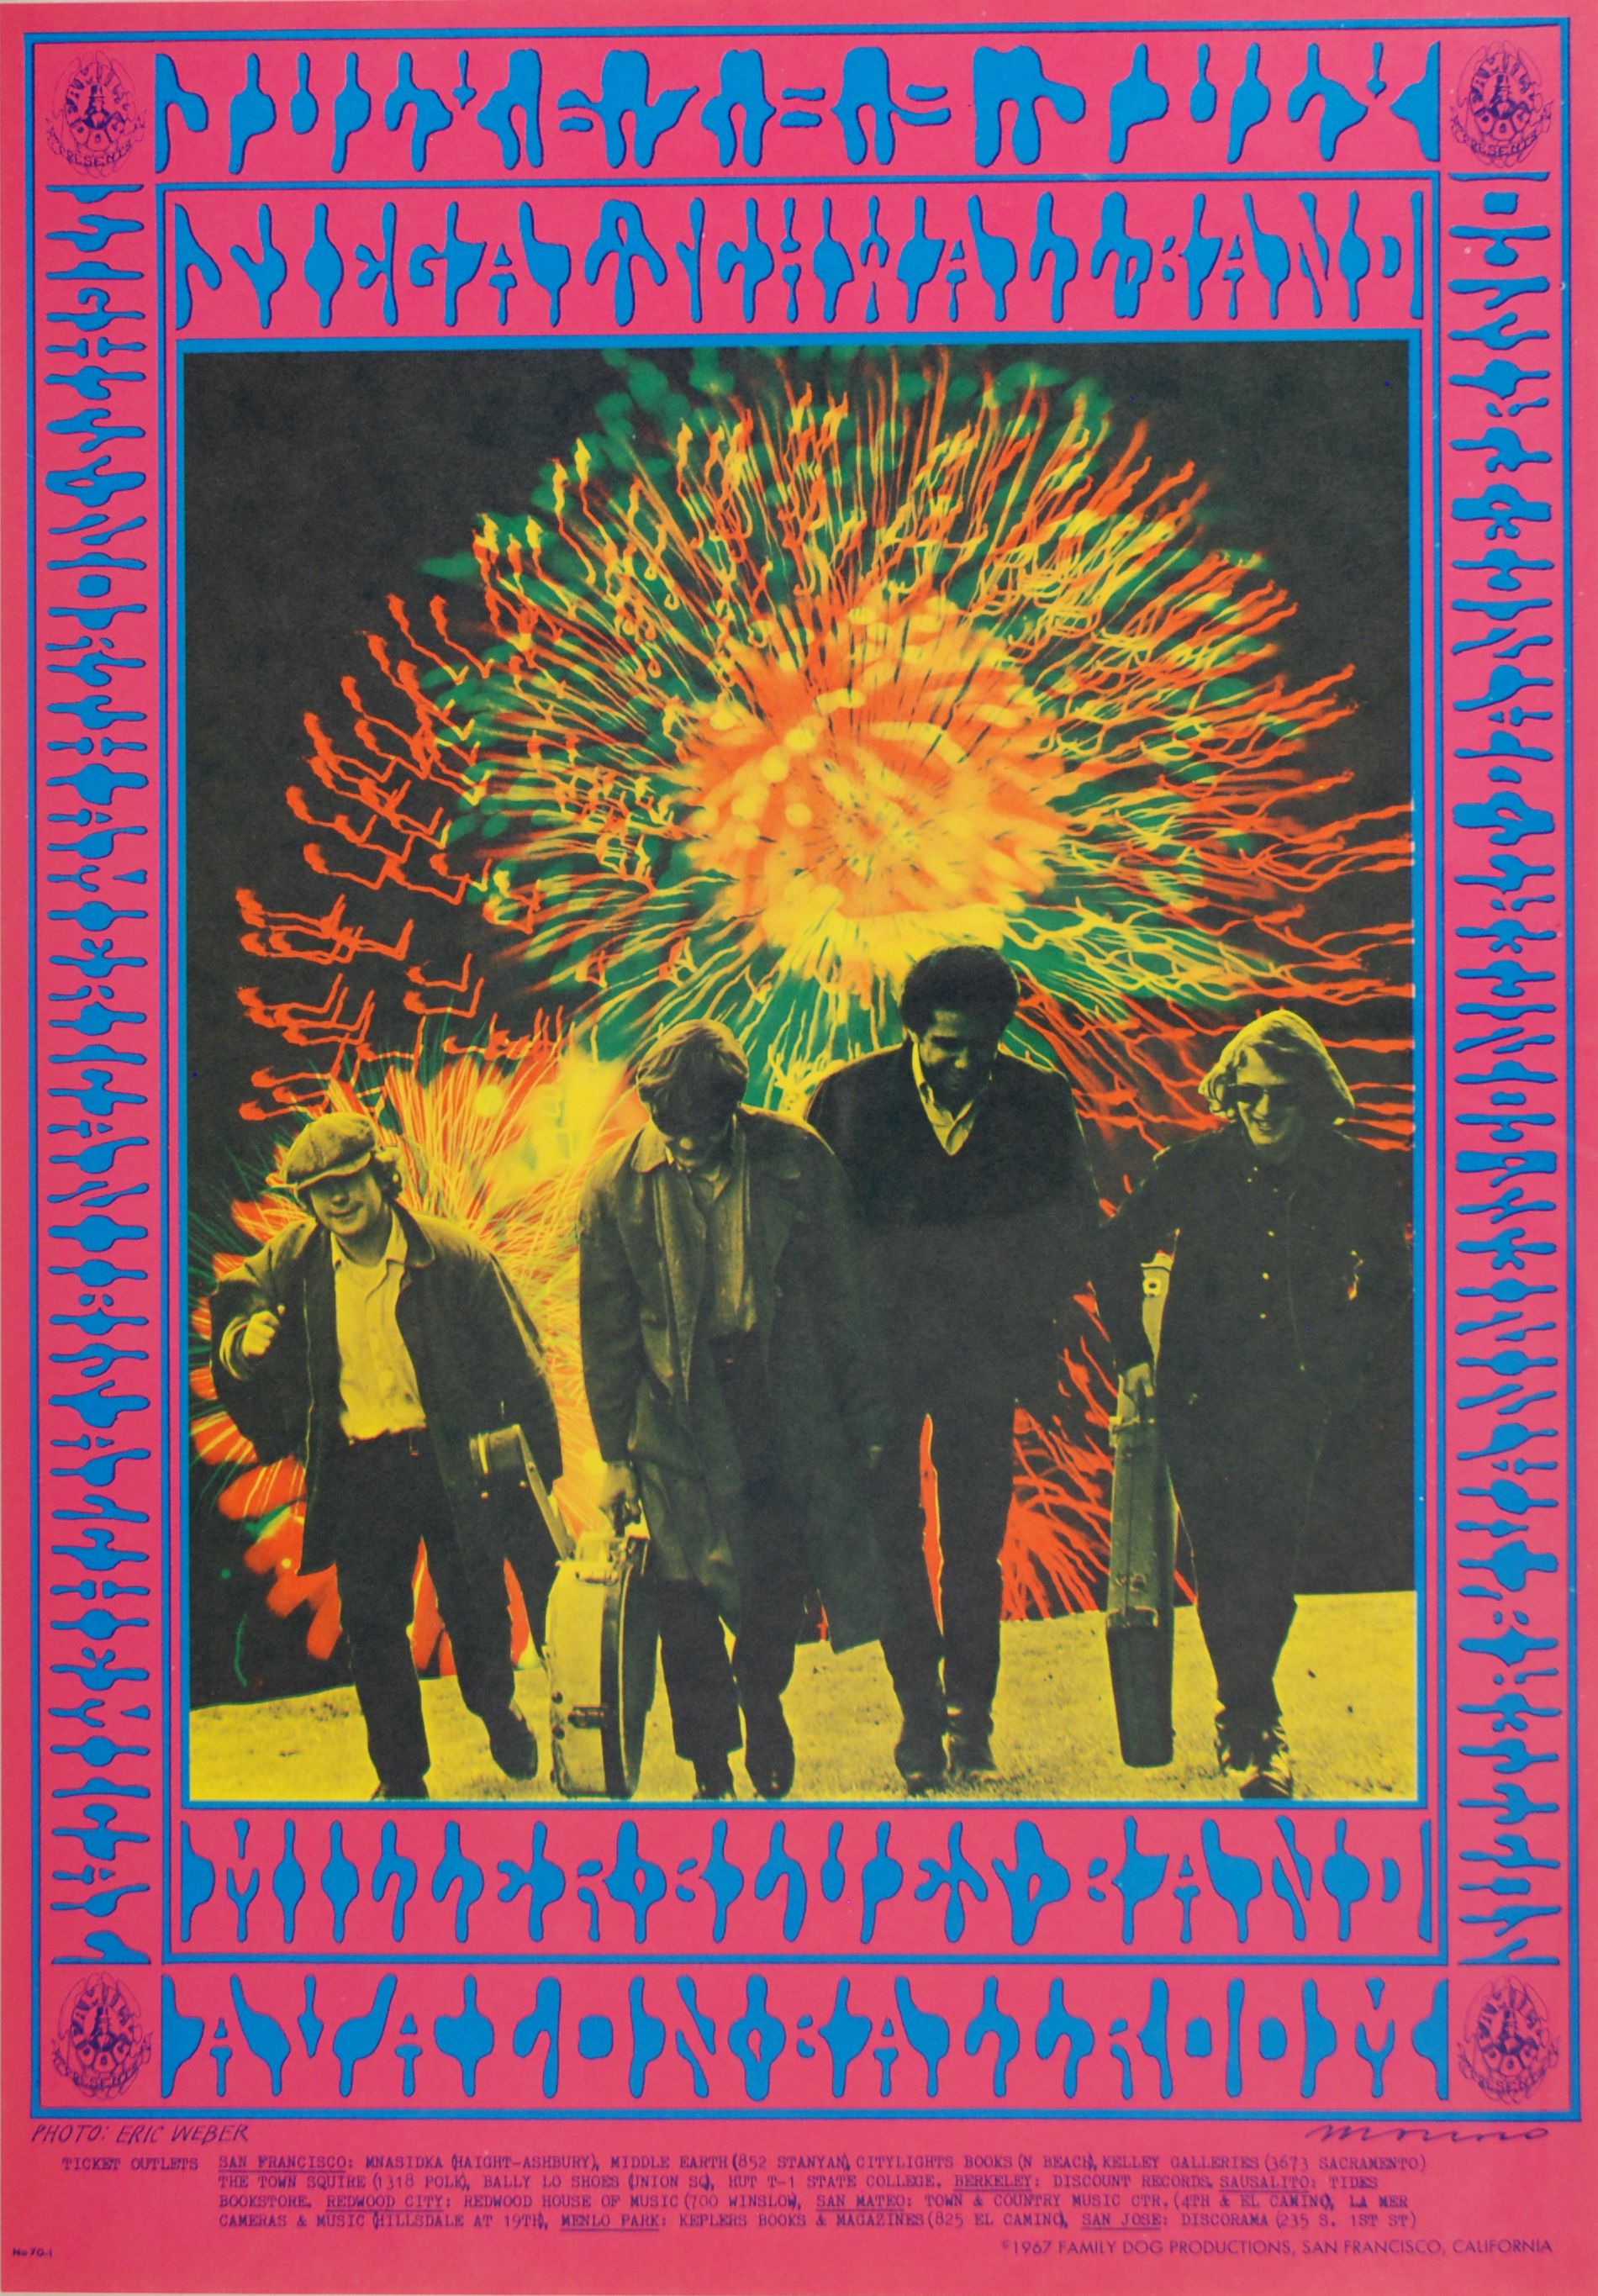 FD-70-OP-1 Concert Poster